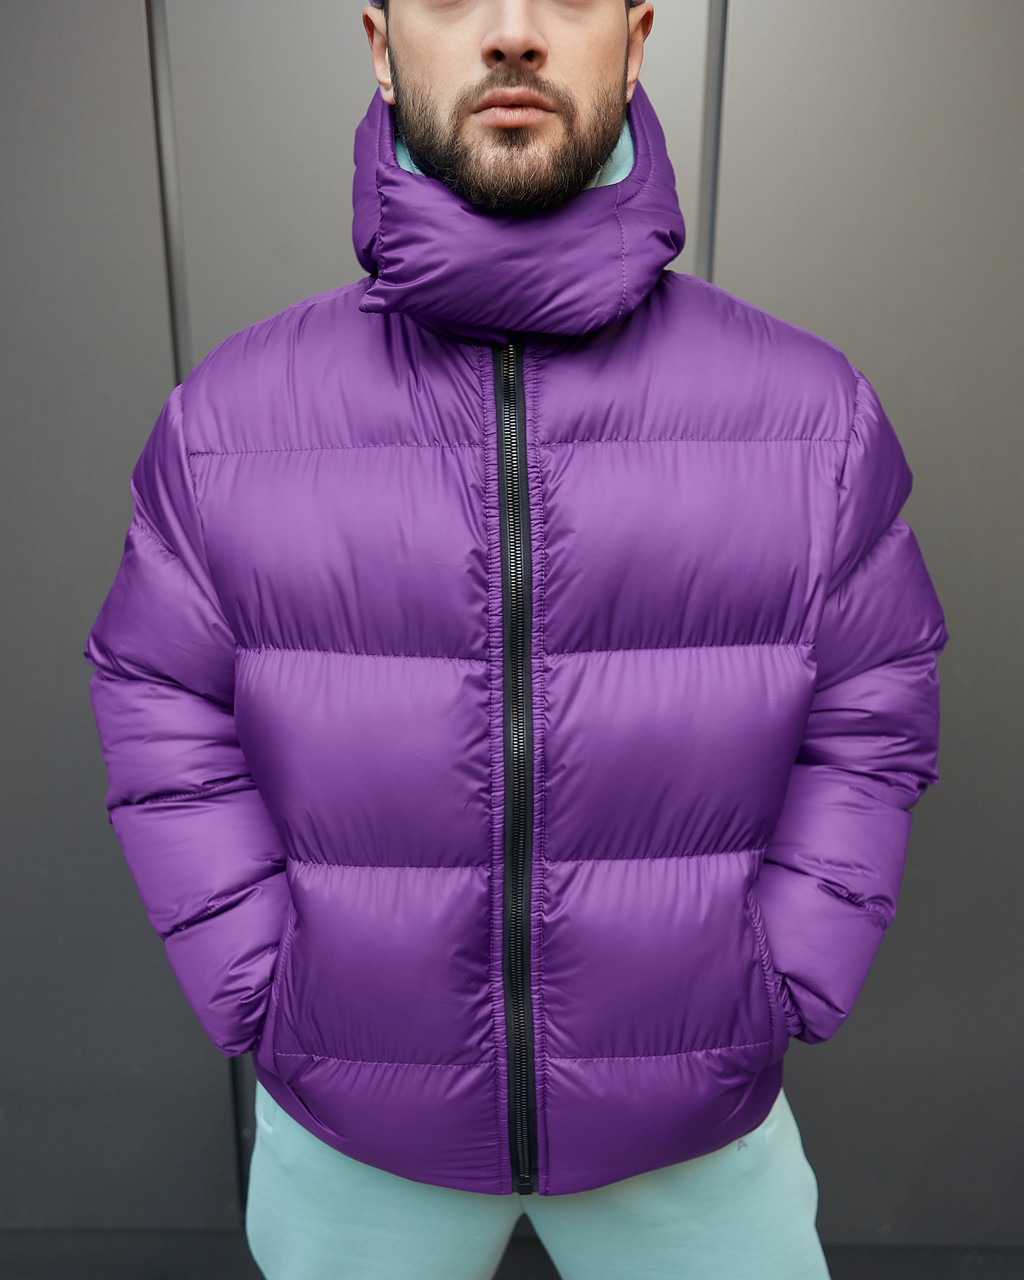 Зимняя мужская куртка Homie фиолетовая Пушка Огонь - Фото 3